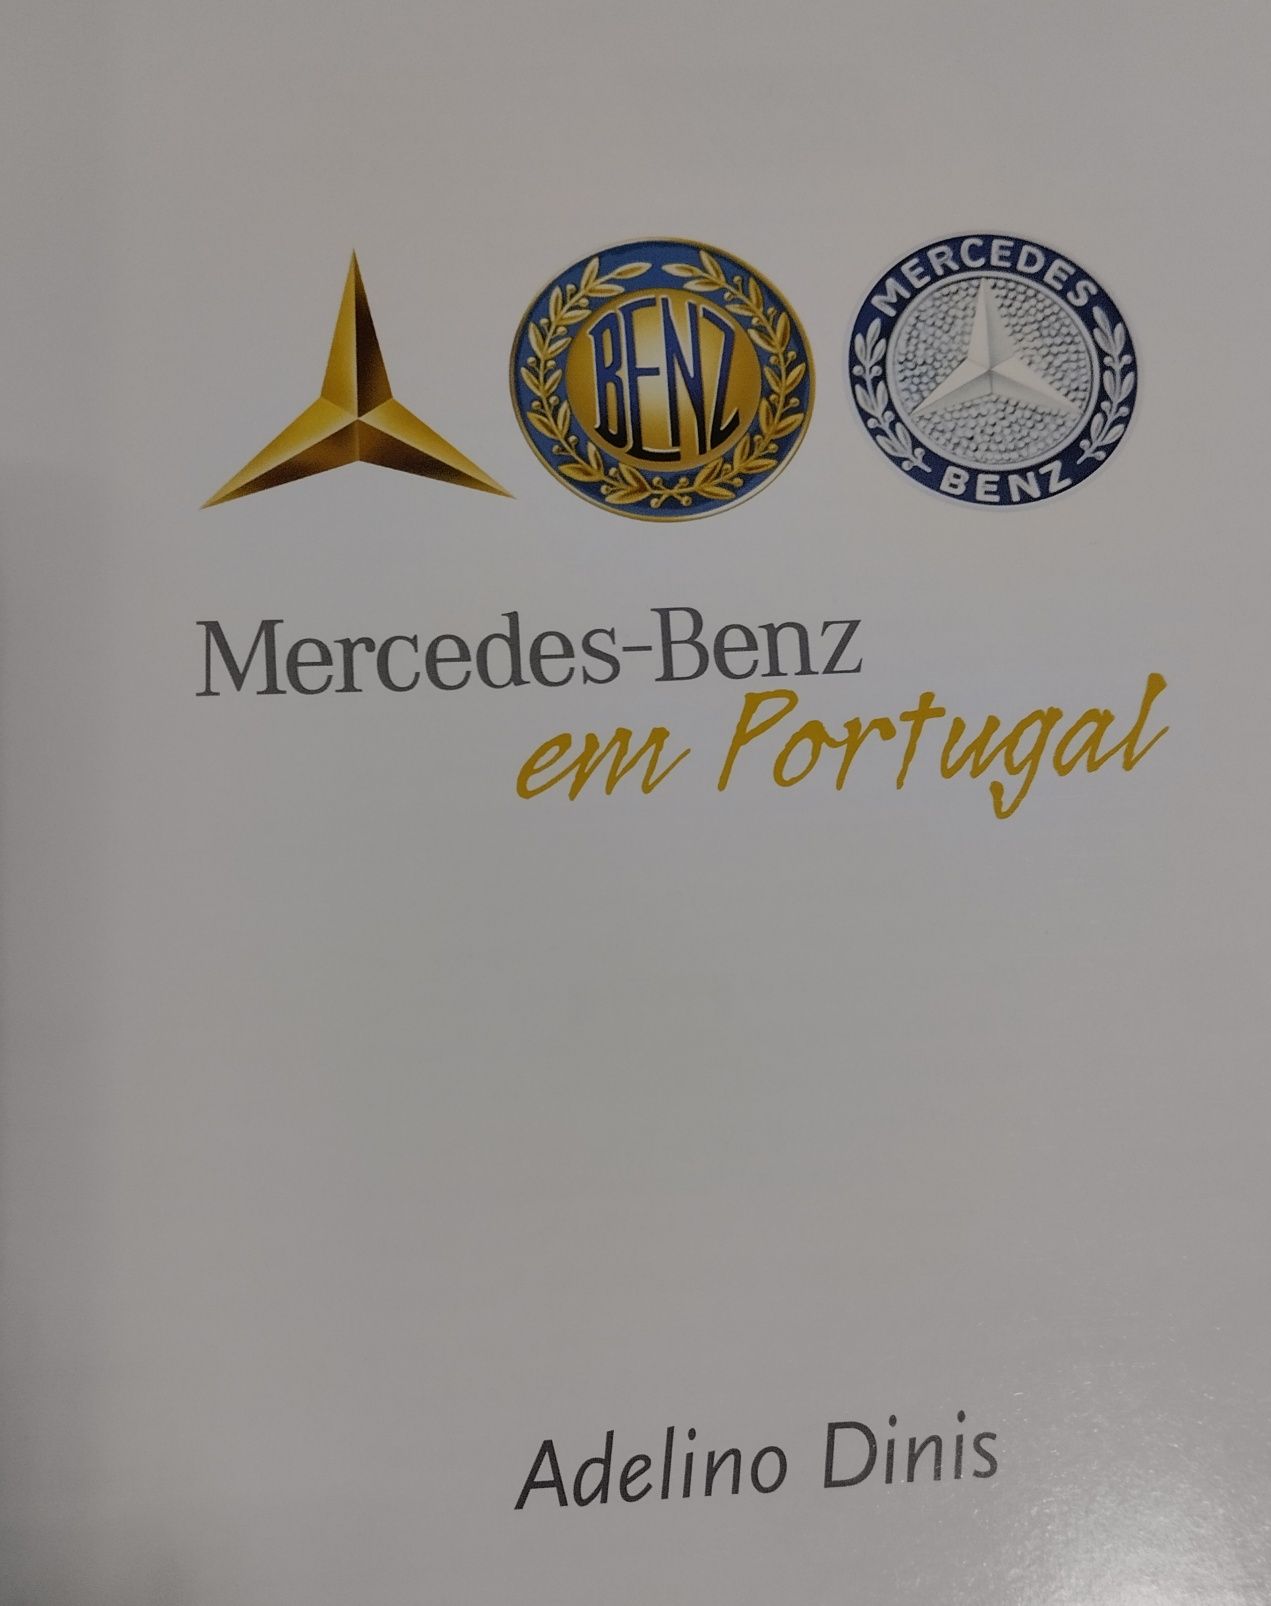 Livro com ilustrações e textos sobre a Mercedes Benz em Portugal